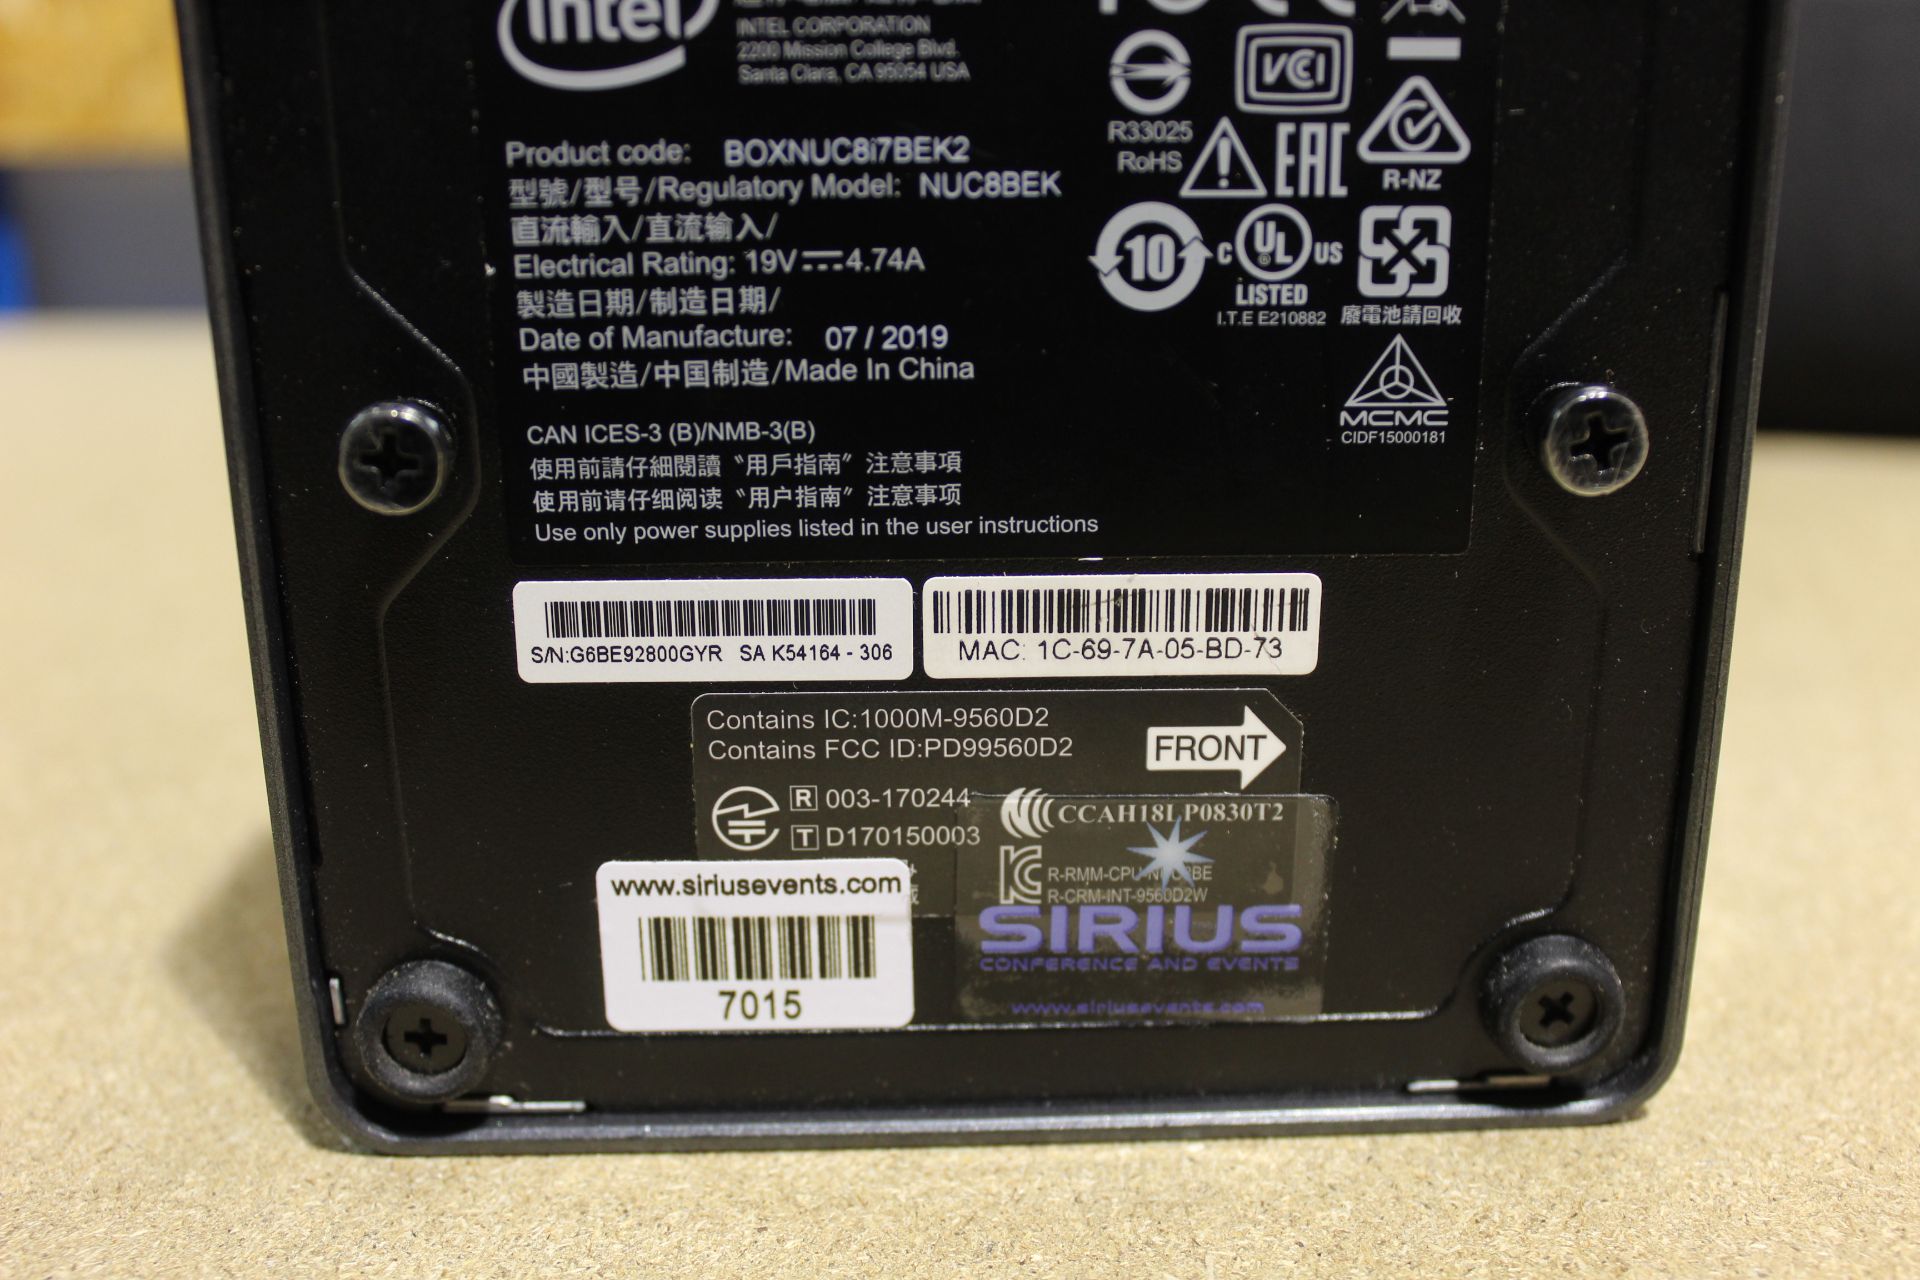 Intel NUC 8i7BEK2 Core i7 - 8559U CPU @ 2.7 GHz / 16GB RAM / 250GB HDD (Windows 10 Pro) mini PC, - Image 2 of 2